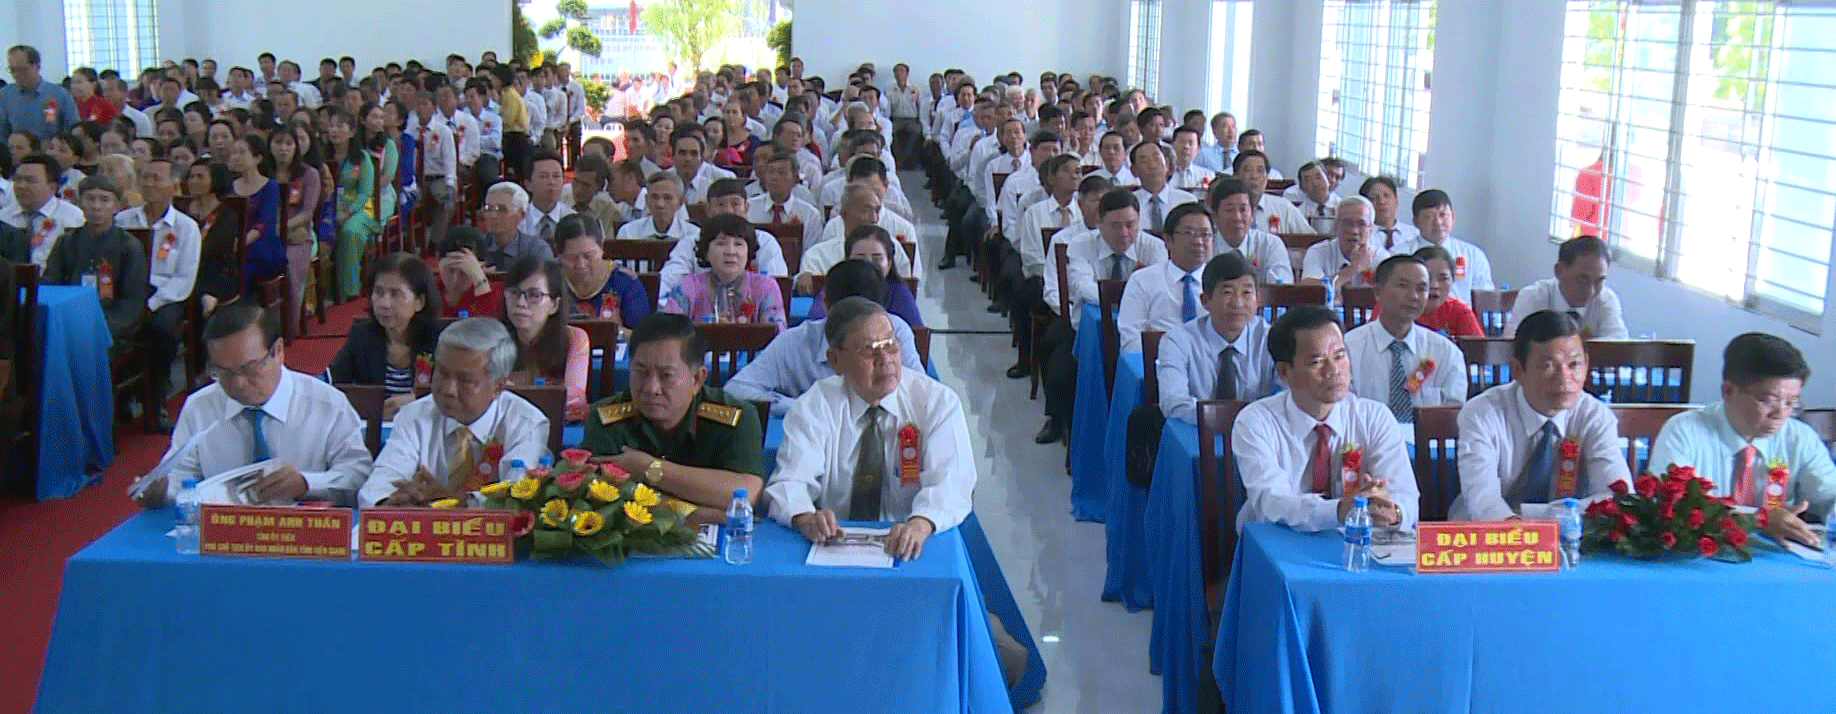 Đông đảo đại biểu tham dự buổi lễ